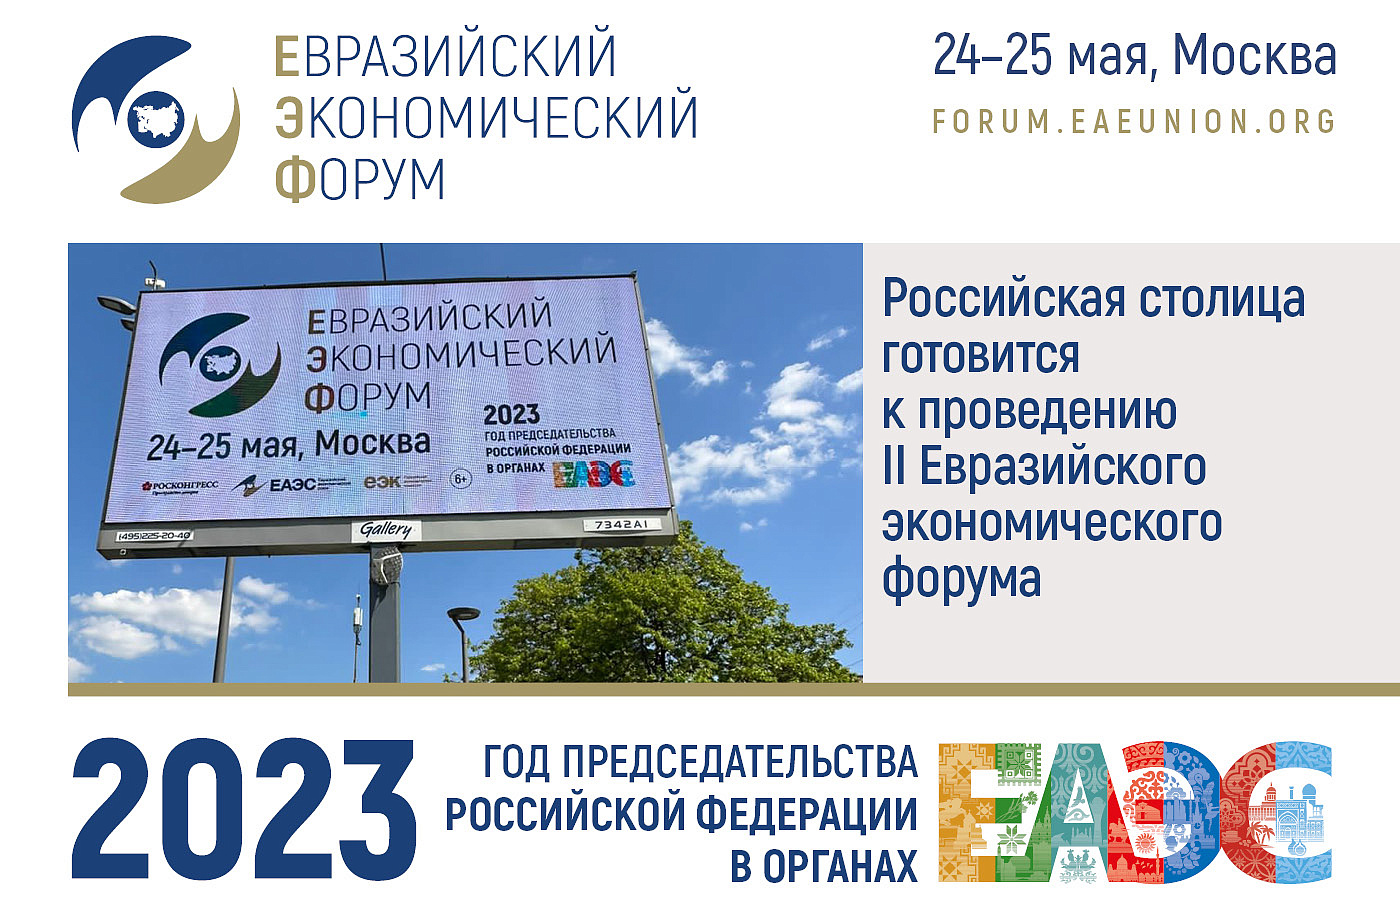 Российская столица готовится к проведению II Евразийского экономического форума